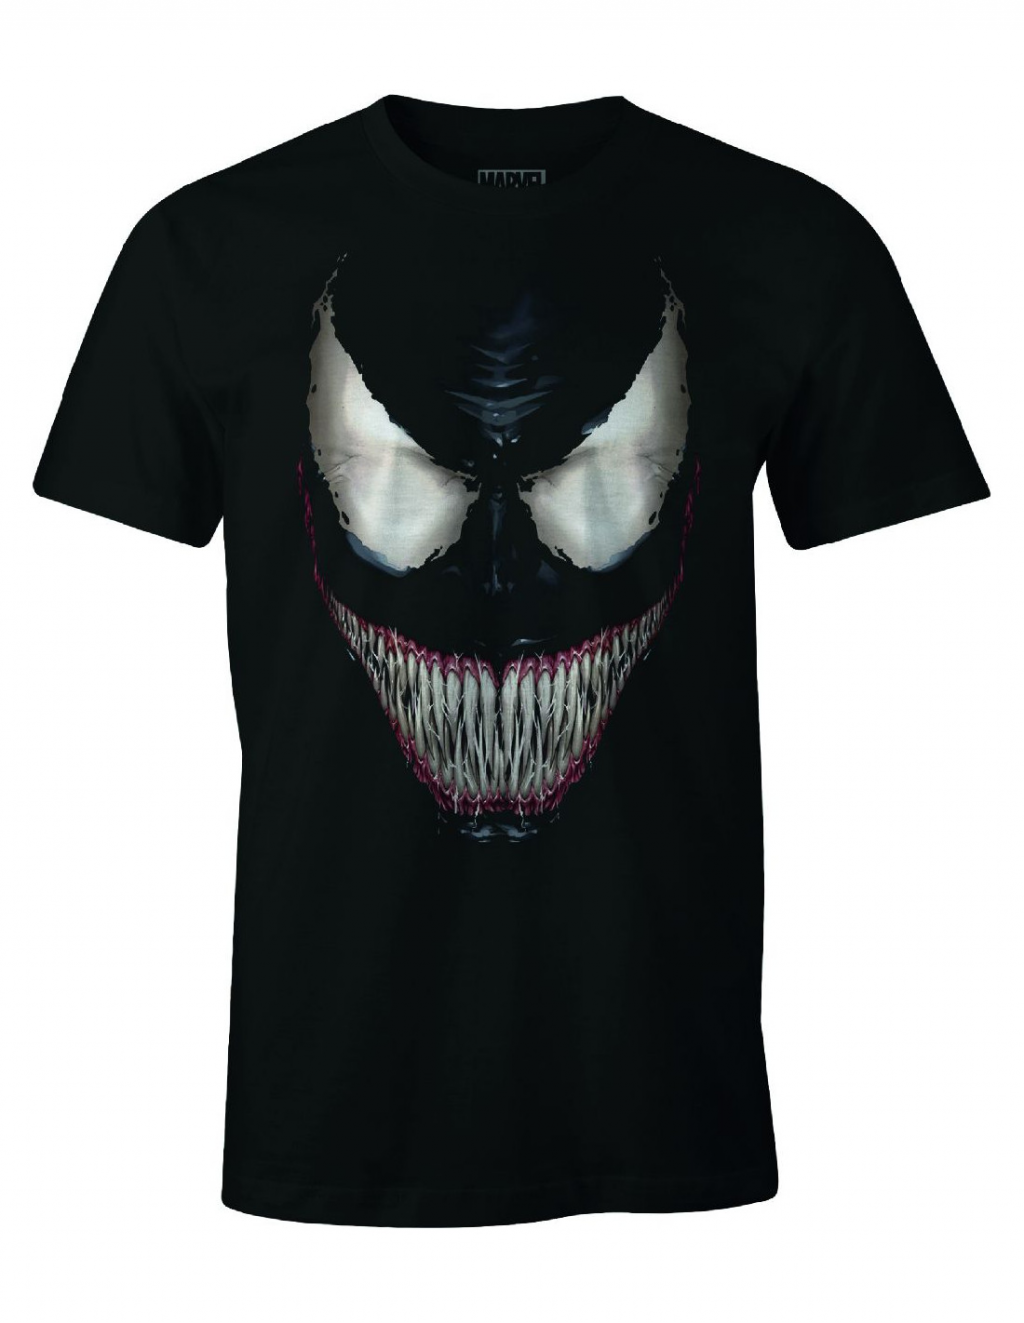 SPIDERMAN - T-Shirt Venom Smile (S)